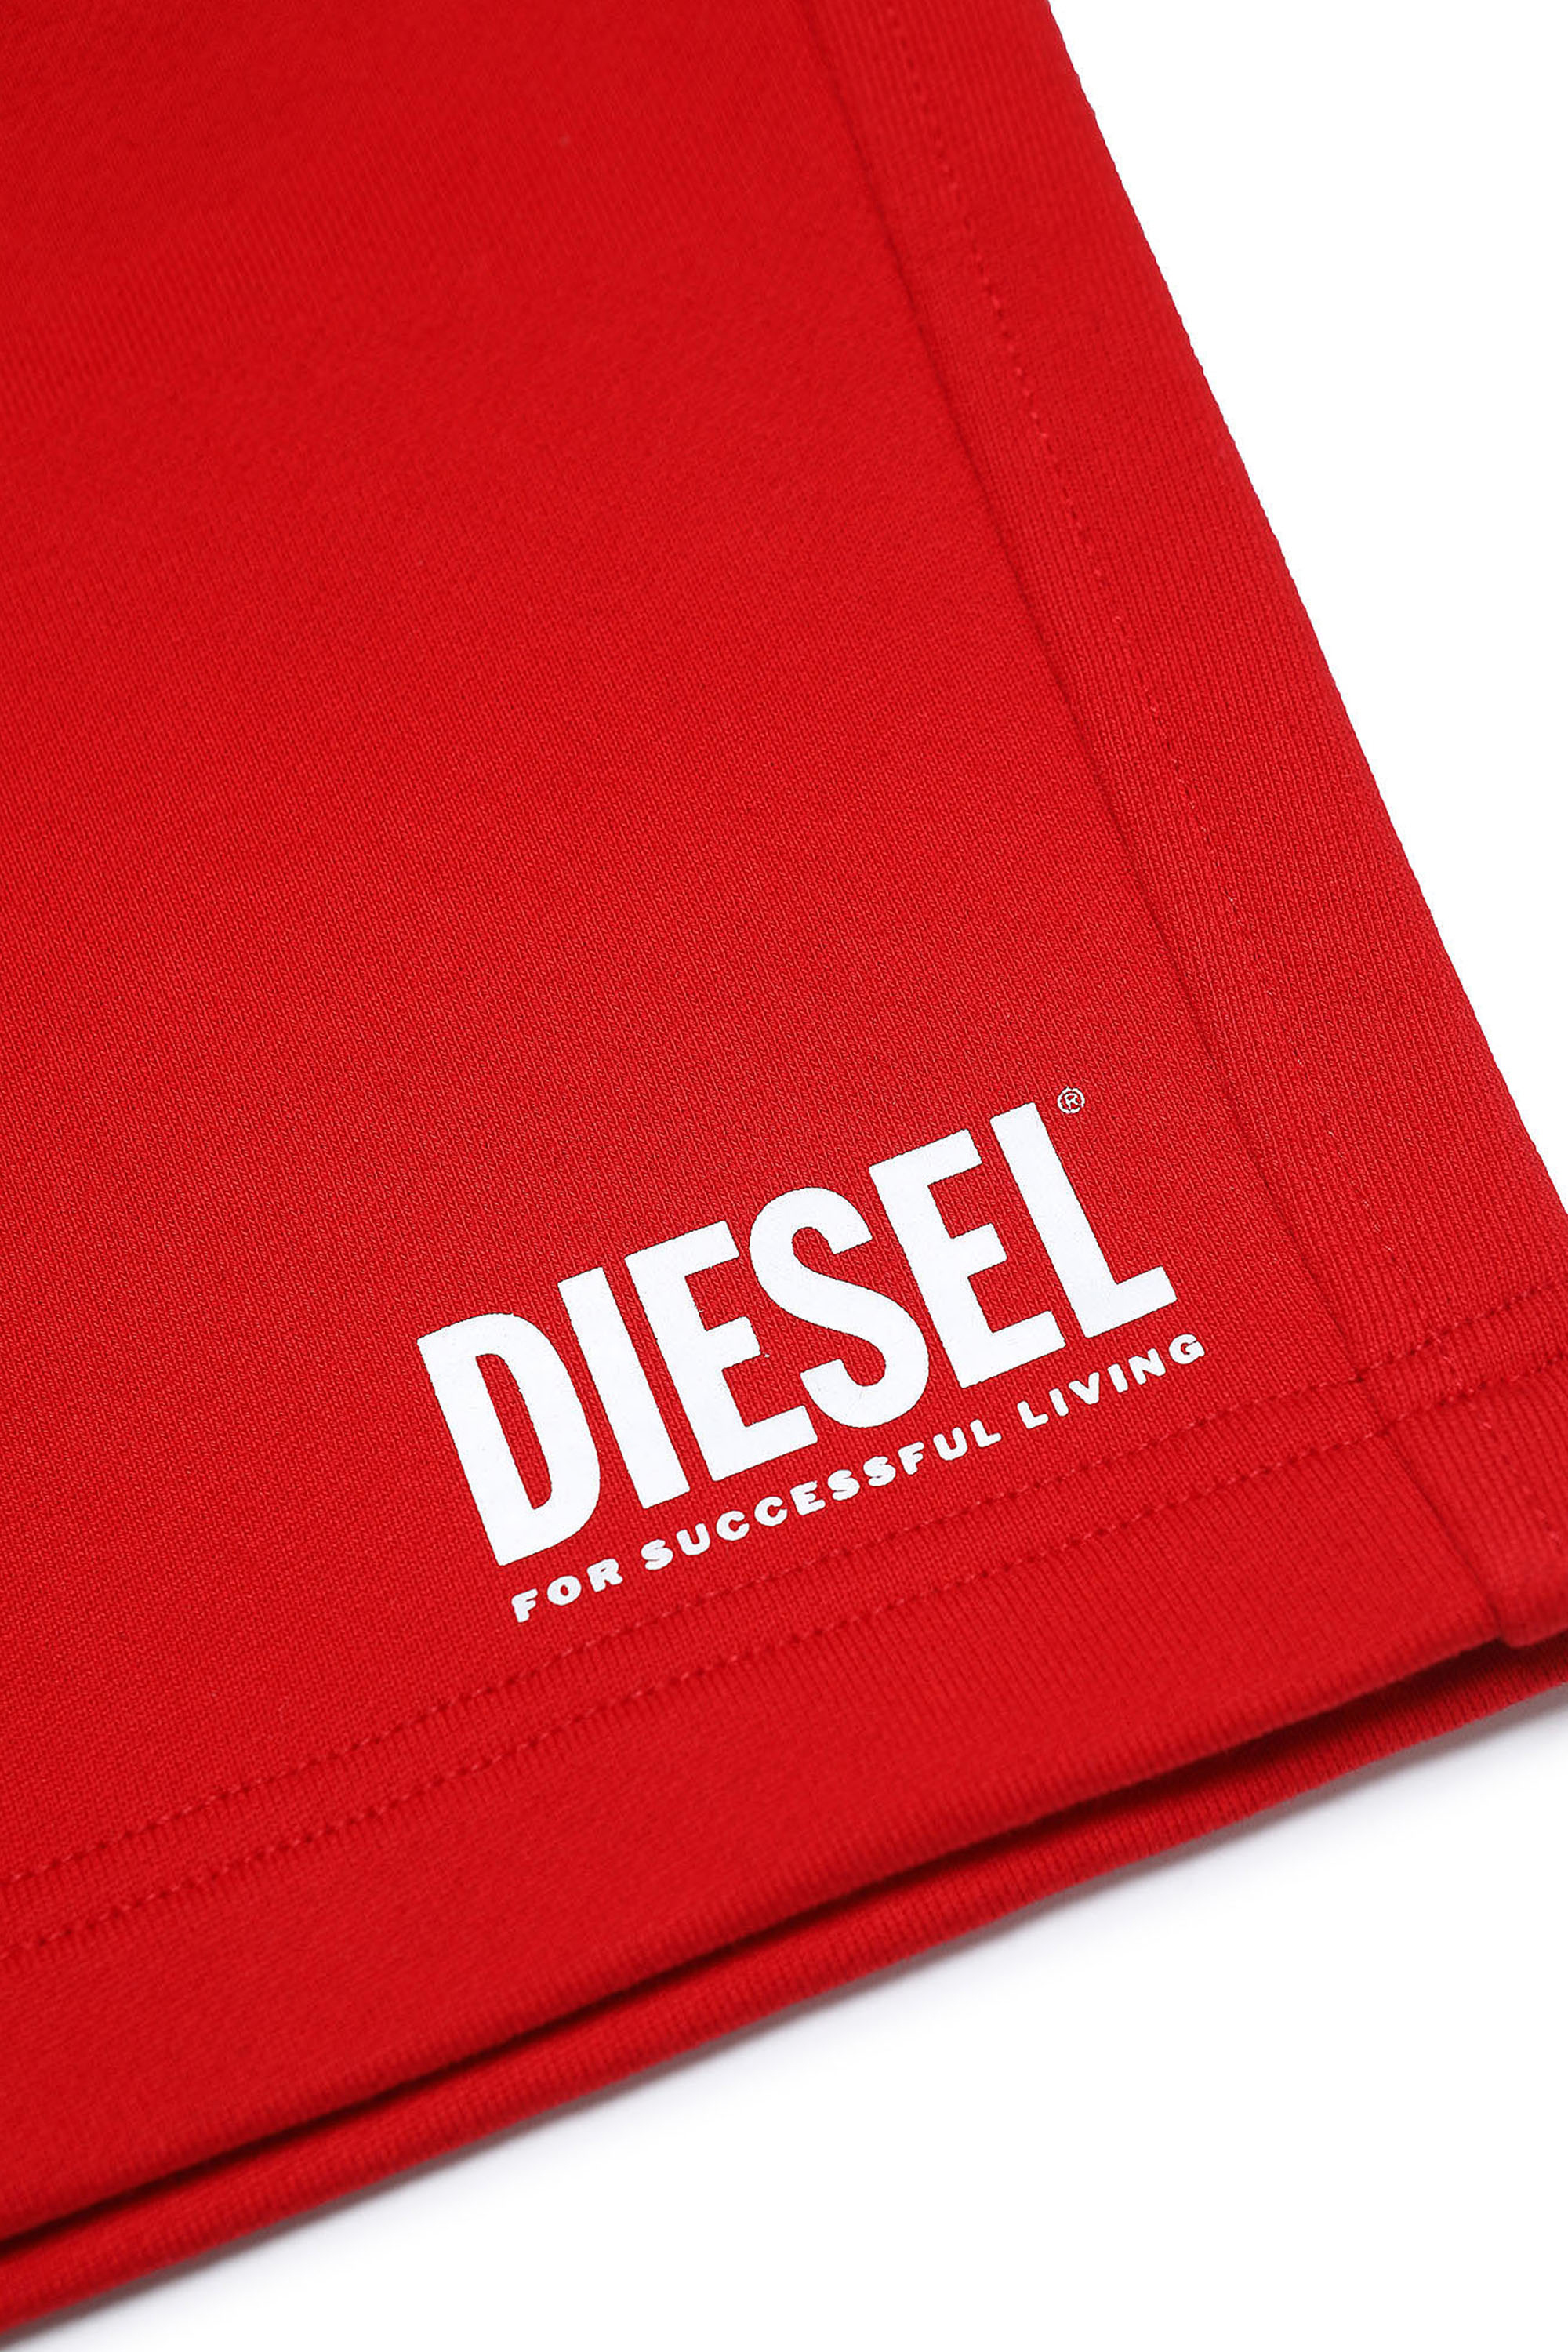 Diesel - PCROWN, Red - Image 3